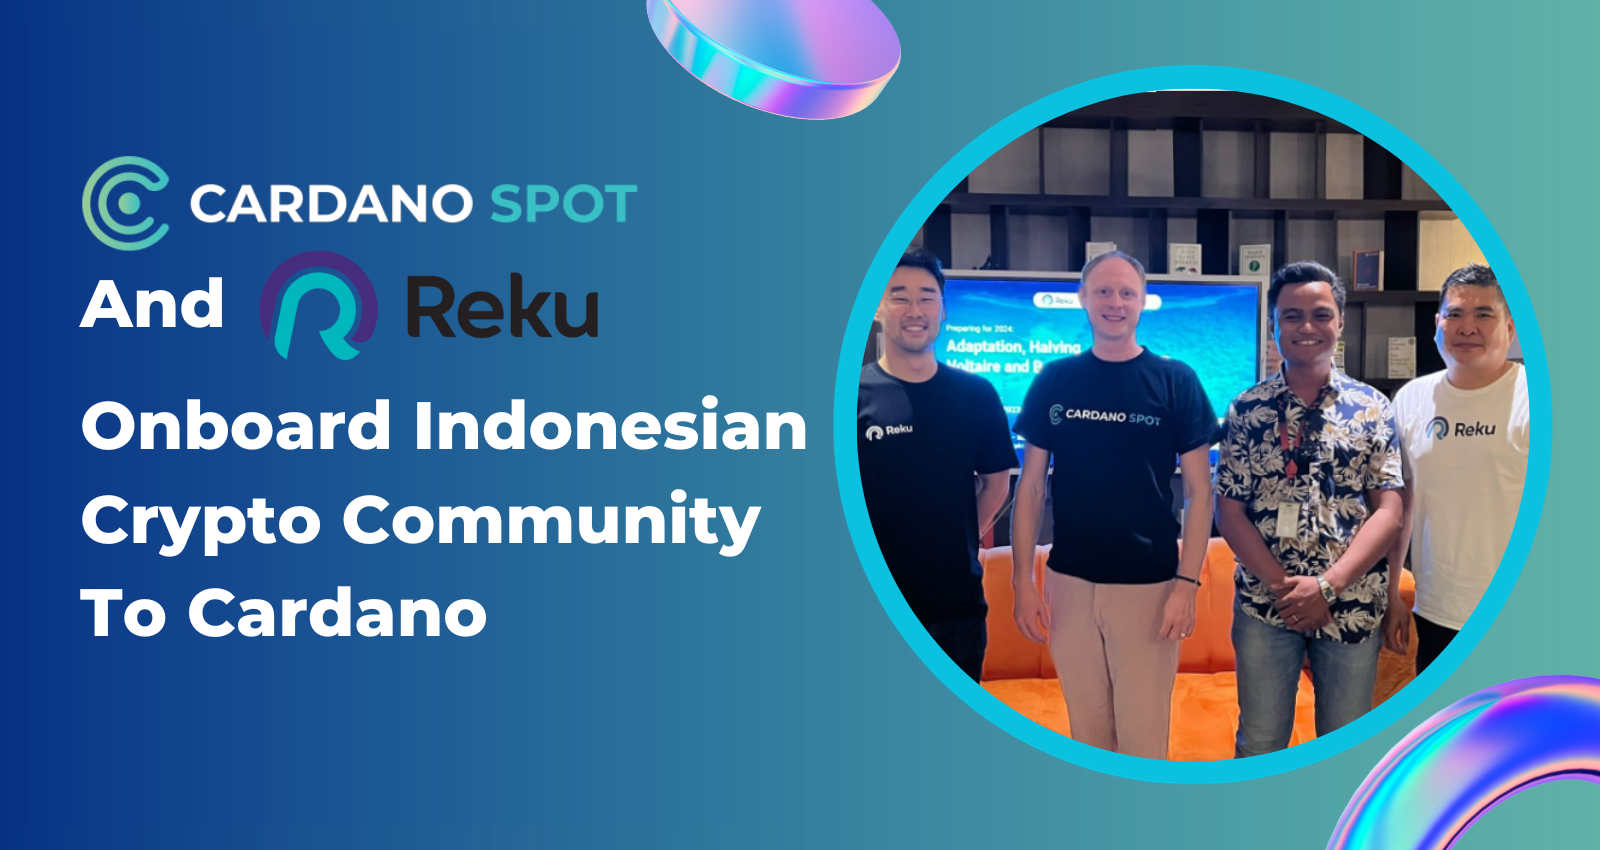 Cardano-Spot-Reku-Indonesia-Partnership